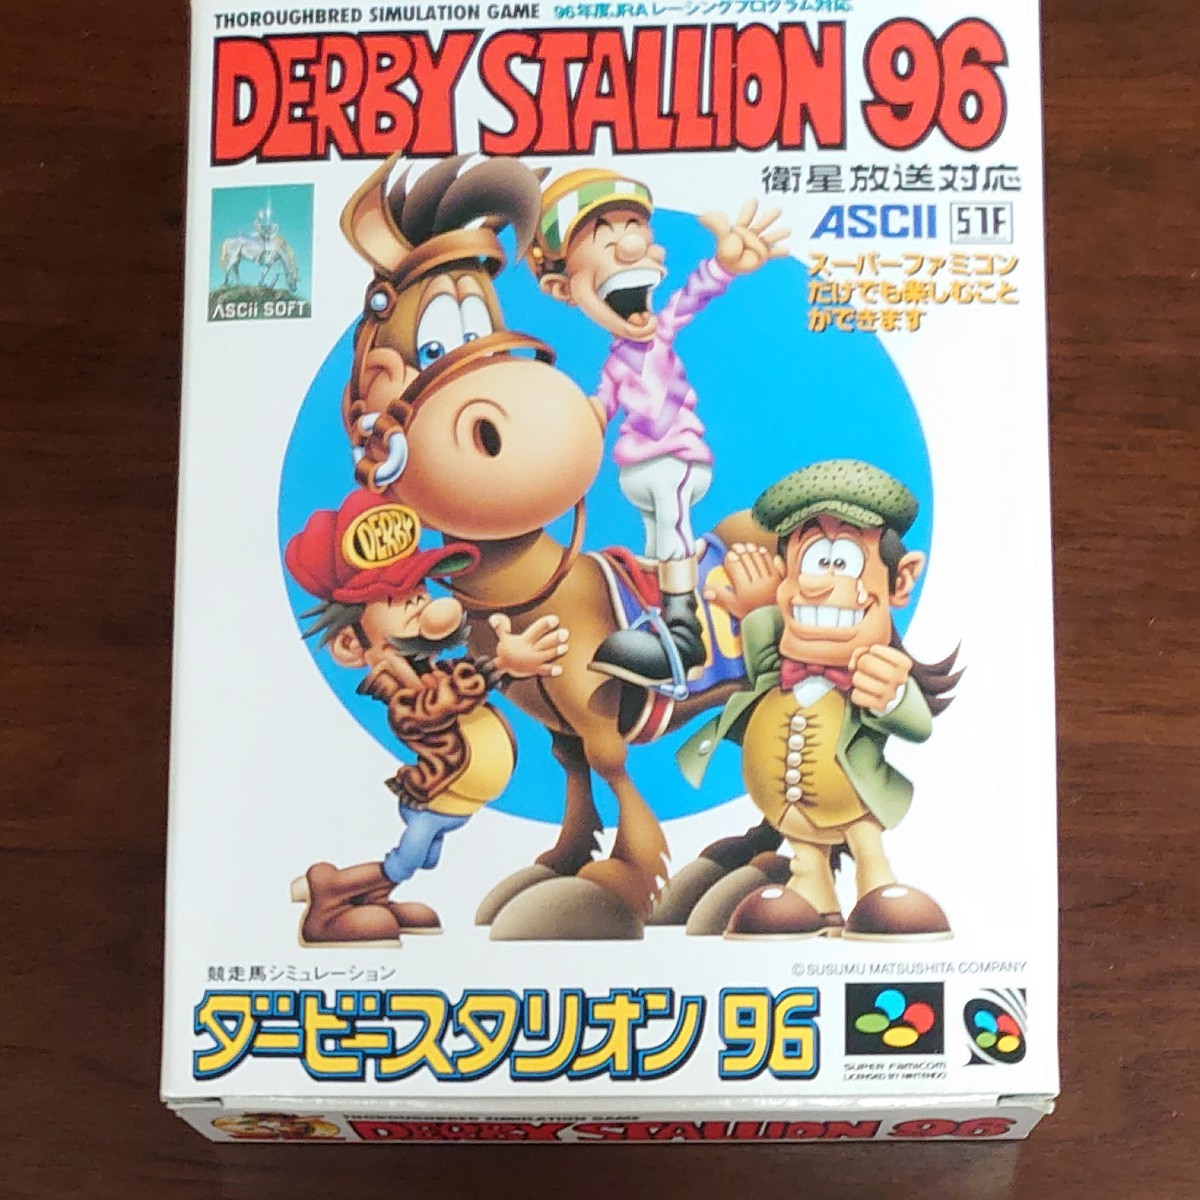 ダービースタリオン 96 スーパーファミコン レトロ